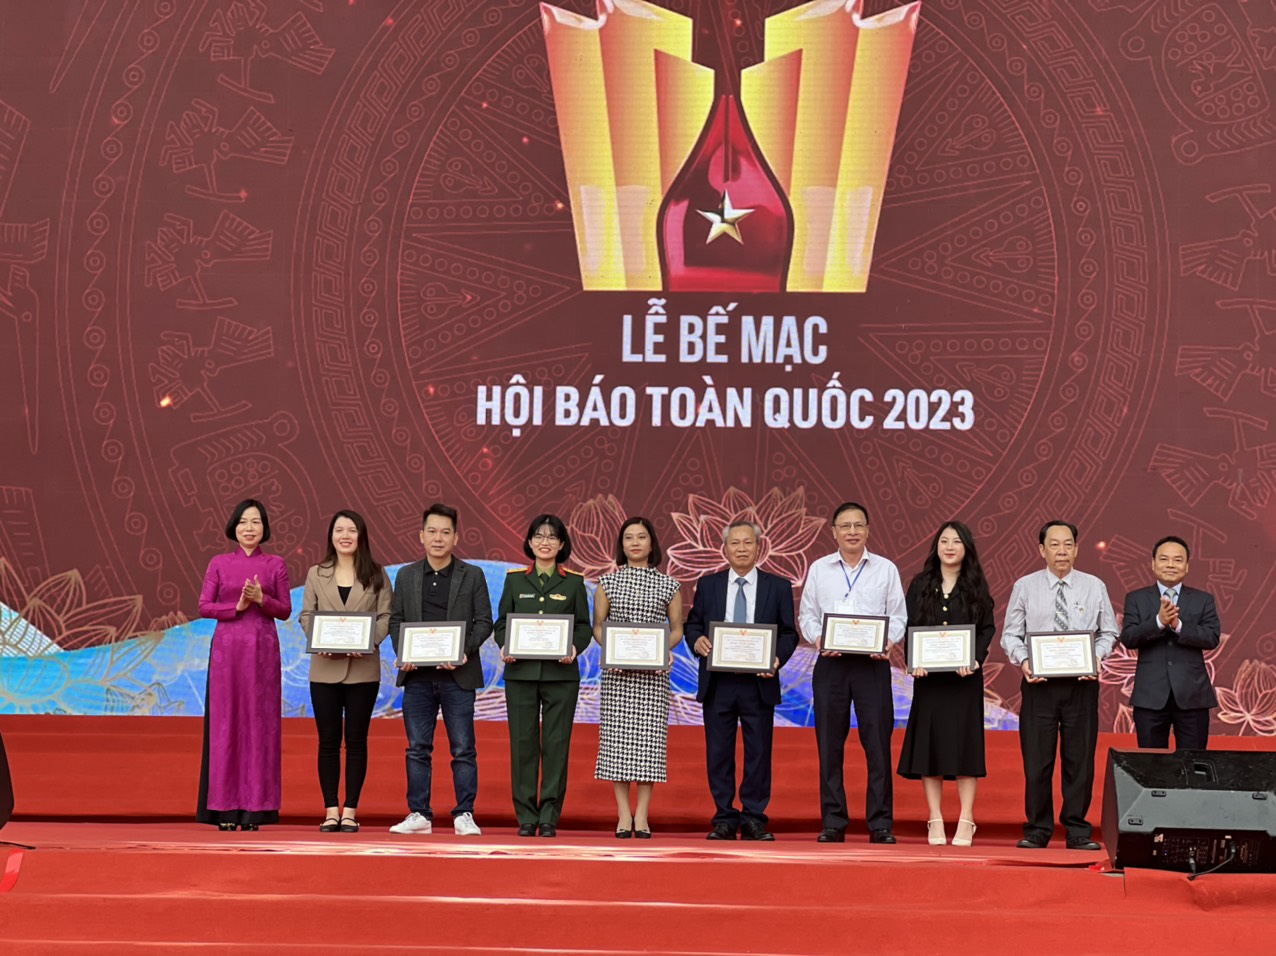 Báo chí Quảng Bình nhận 2 giải thưởng tại Hội báo toàn quốc năm 2023